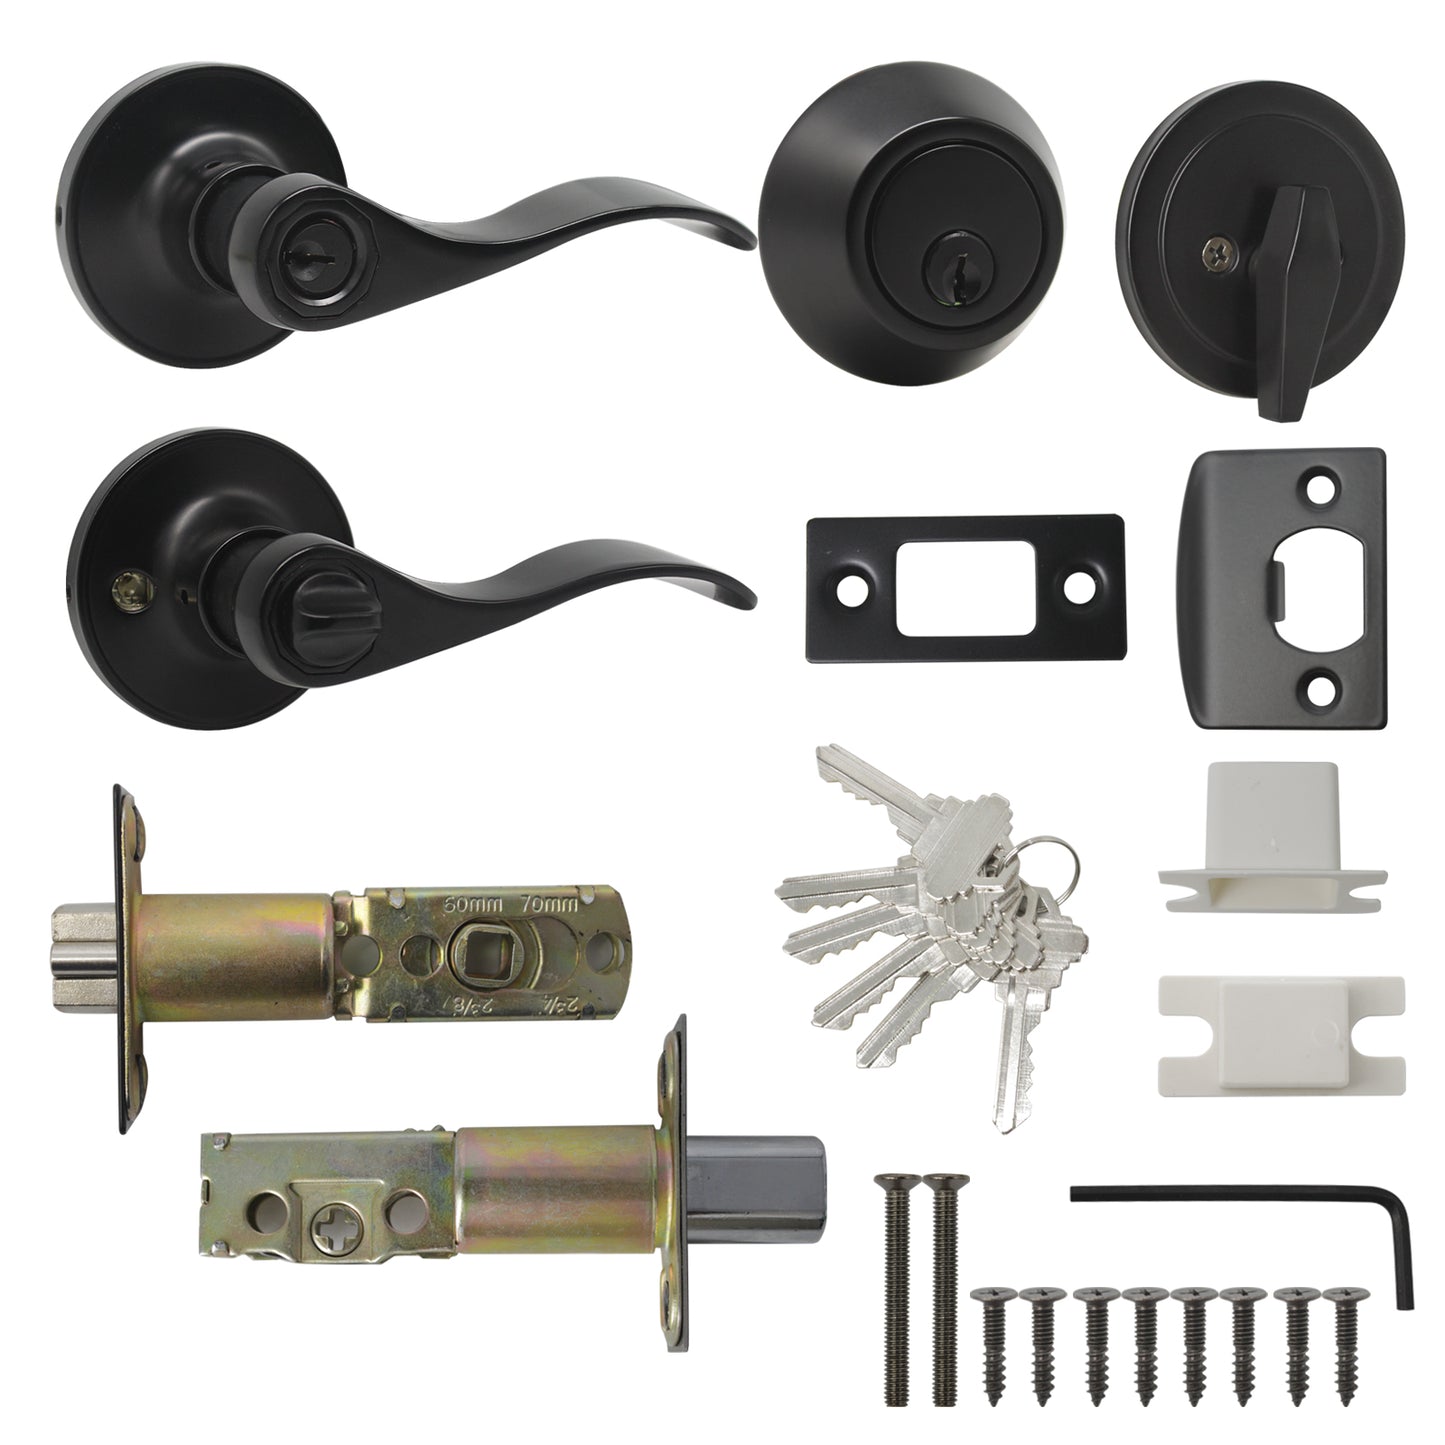 Wave Style Door Lever Lock with Single Cylinder Deadbolt Combo Packs Black Finish - Keyed Alike DL12061ET-101BK